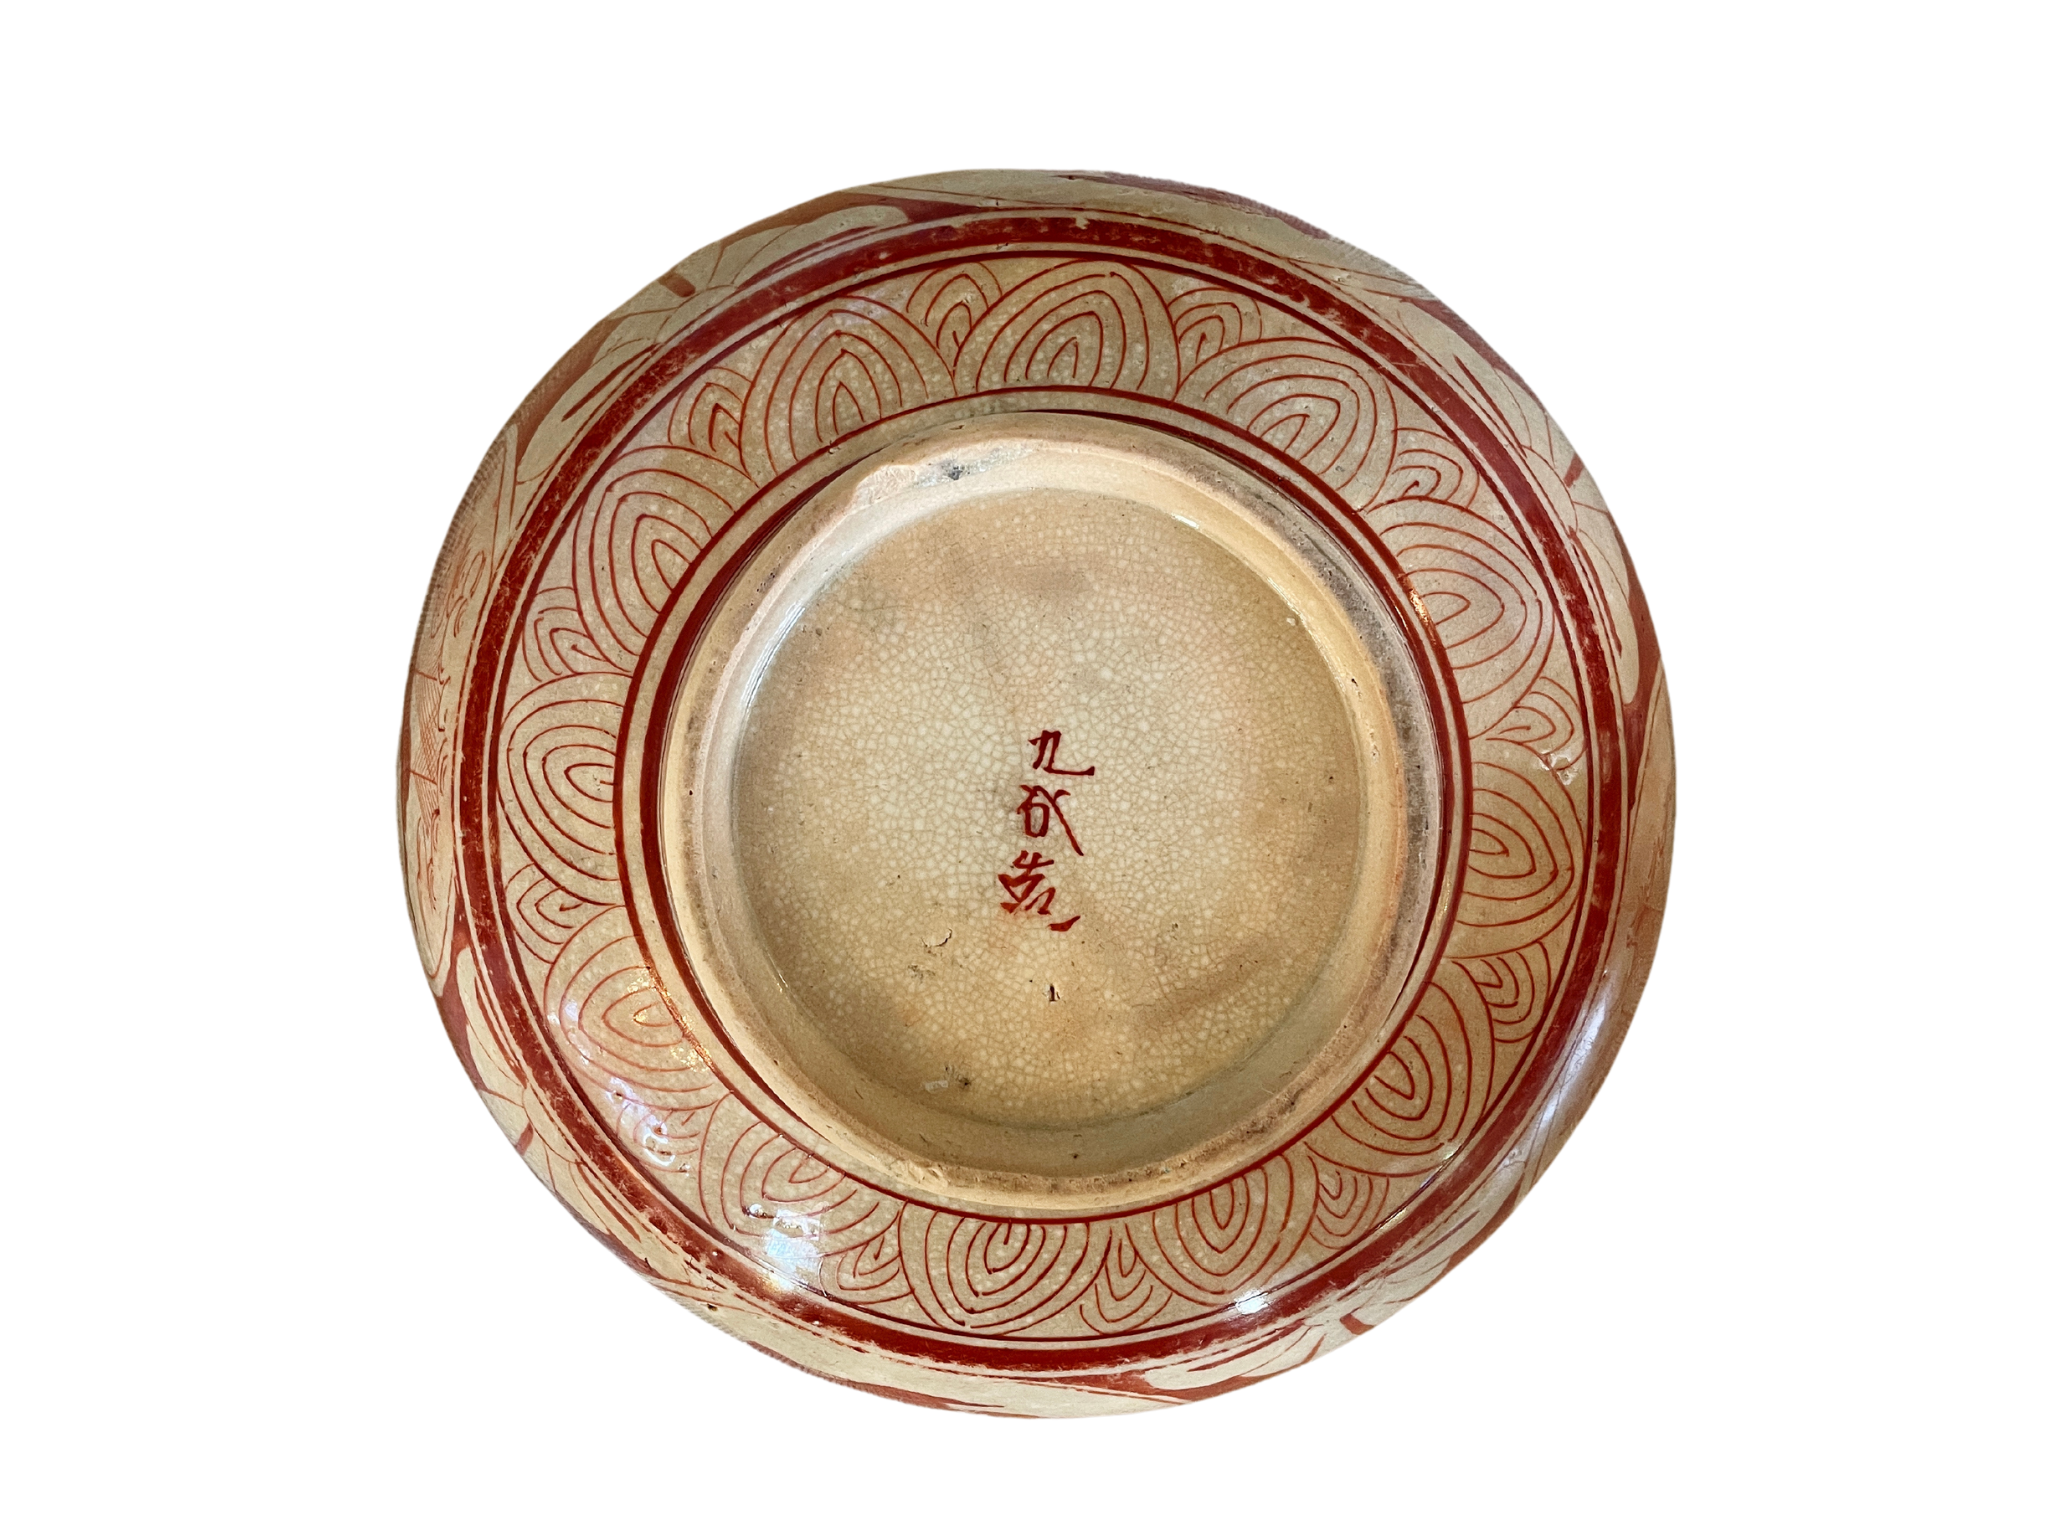 Large 19th Century Japanese Kutani Porcelain Bowl